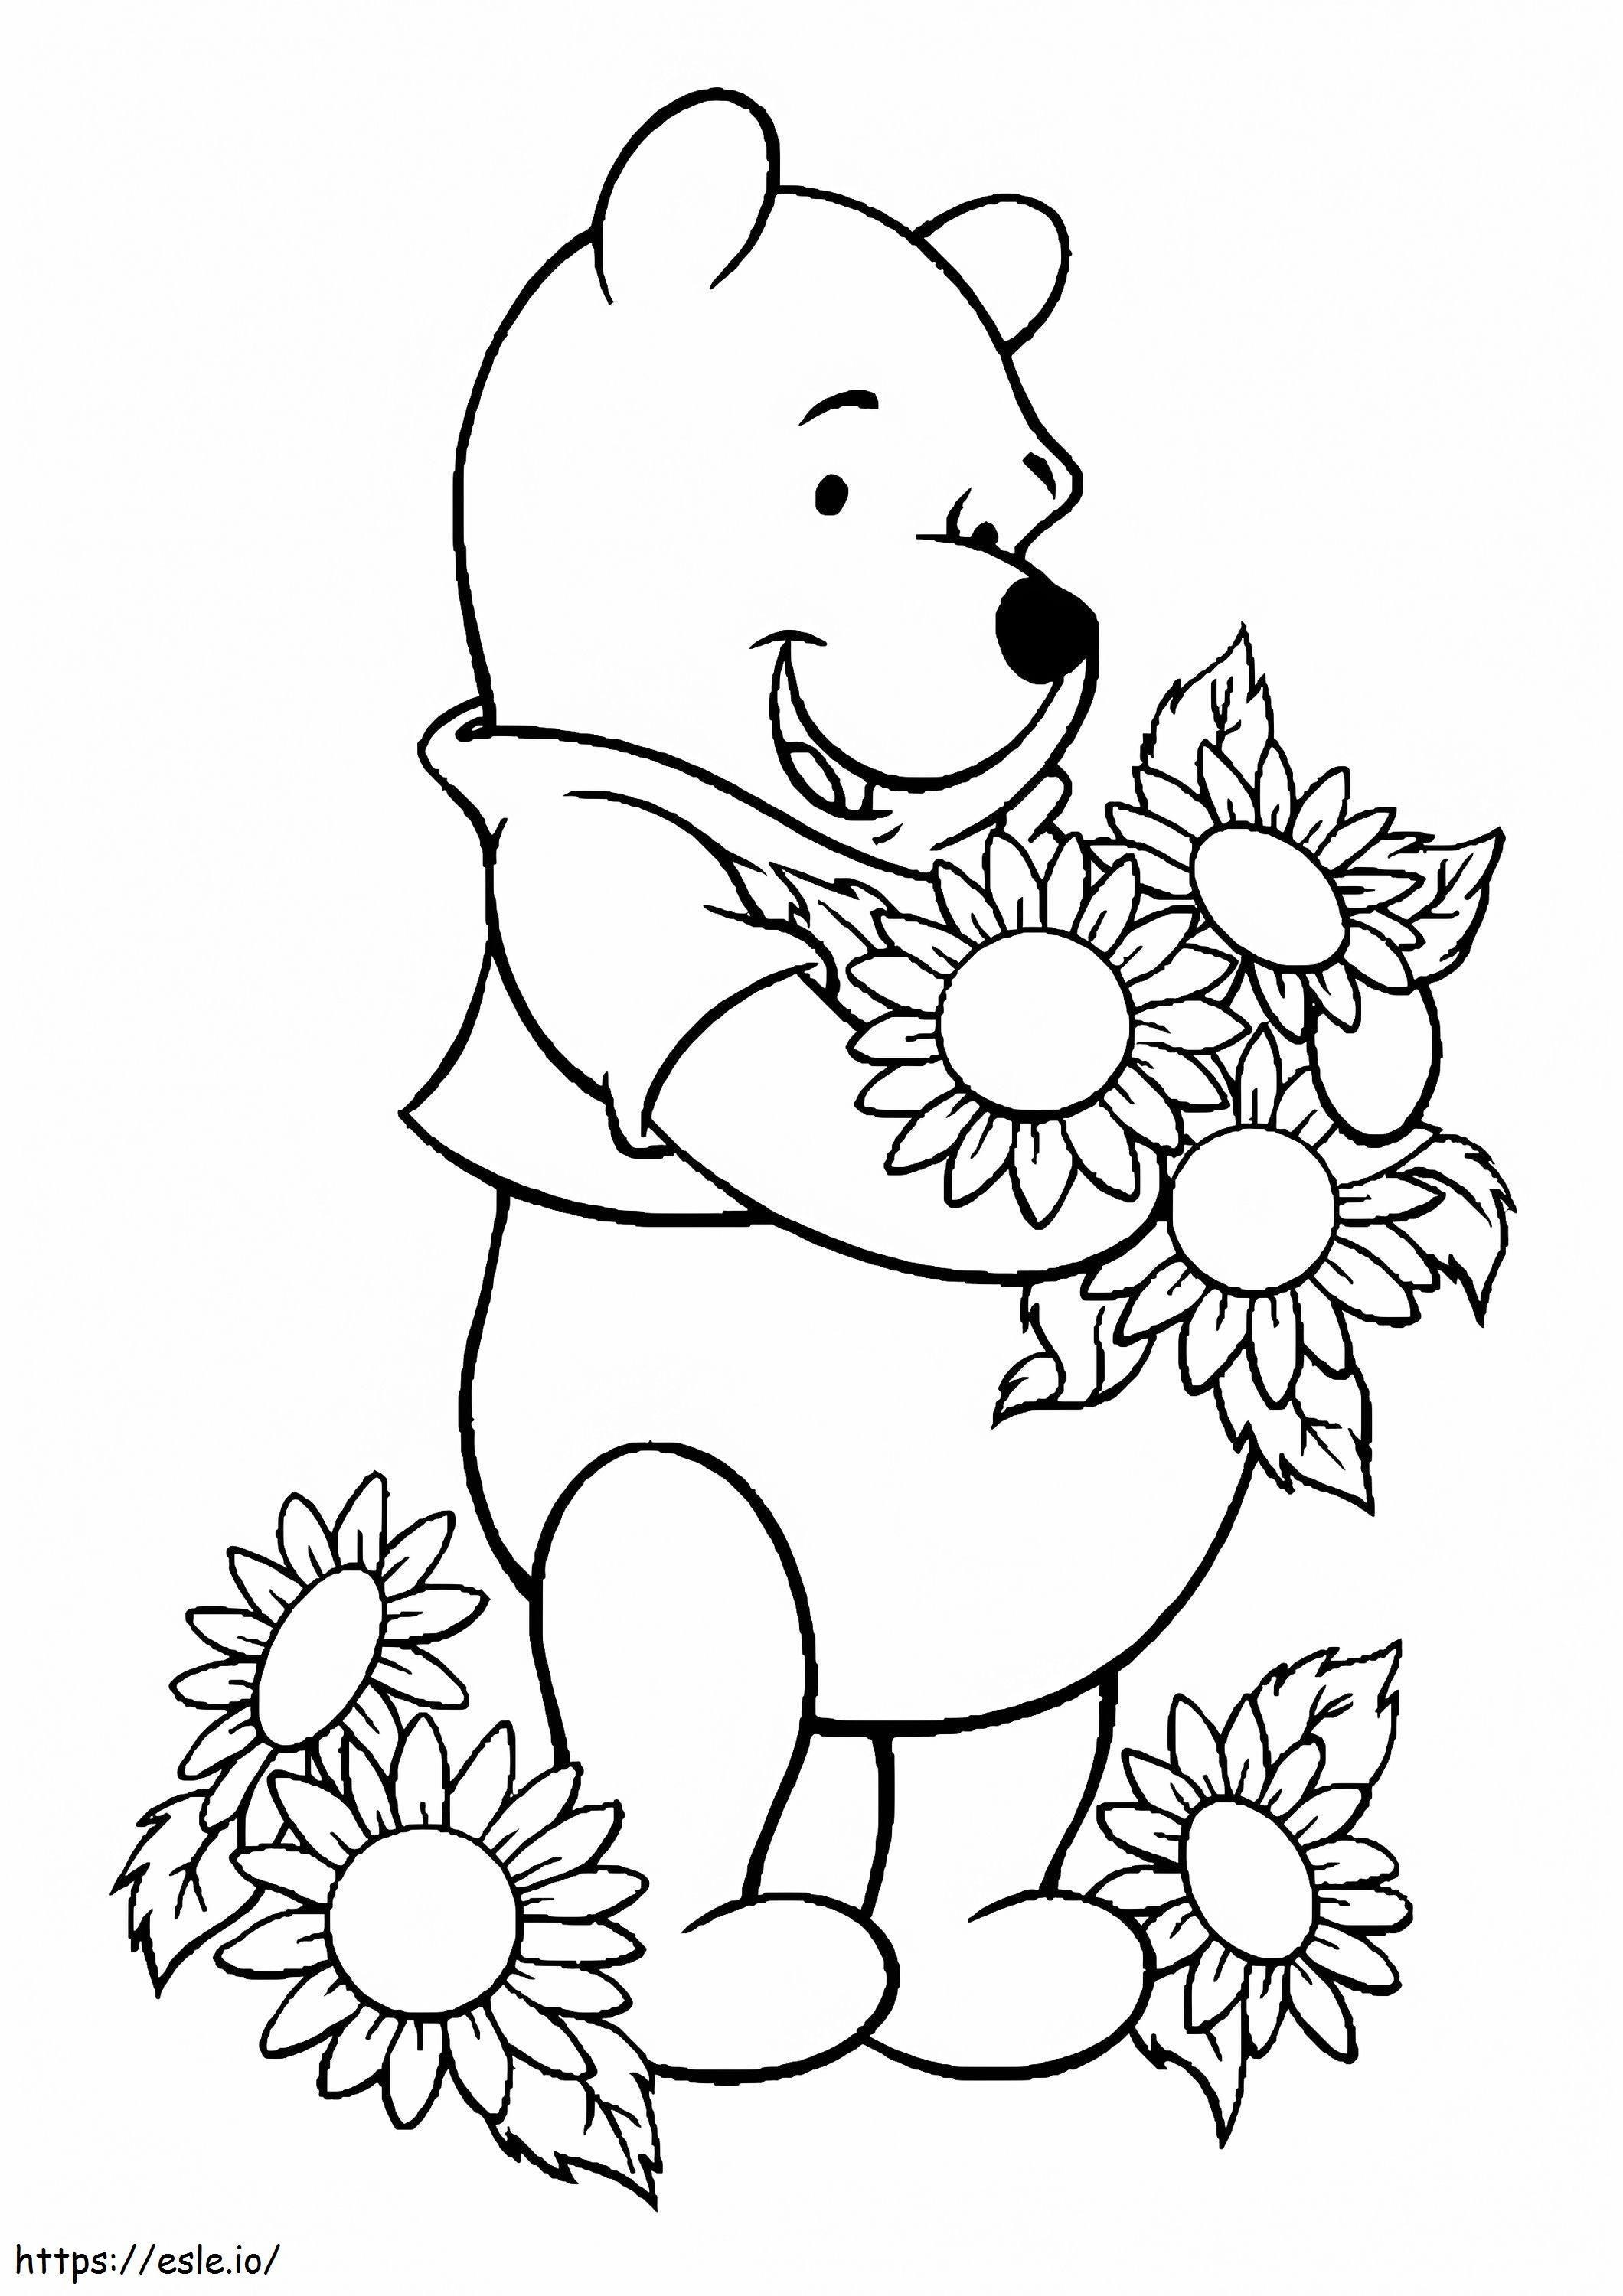 1526549763 O Pooh adora flores1 A4 para colorir